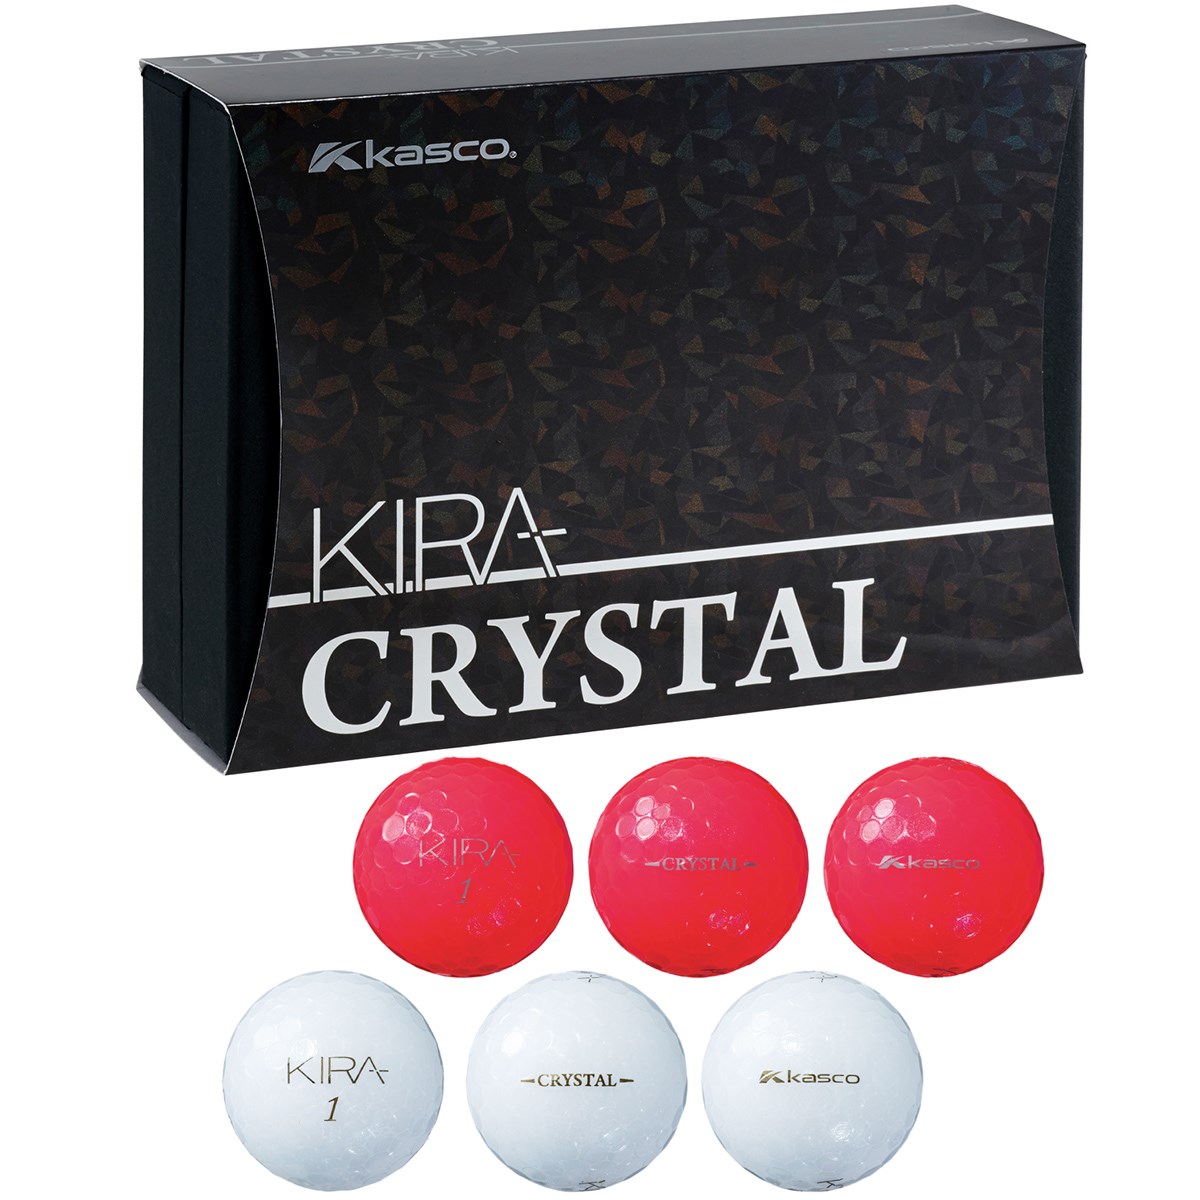  キャスコ KIRA CRYSTAL 紅白ギフト ボール 6個入り ゴルフ